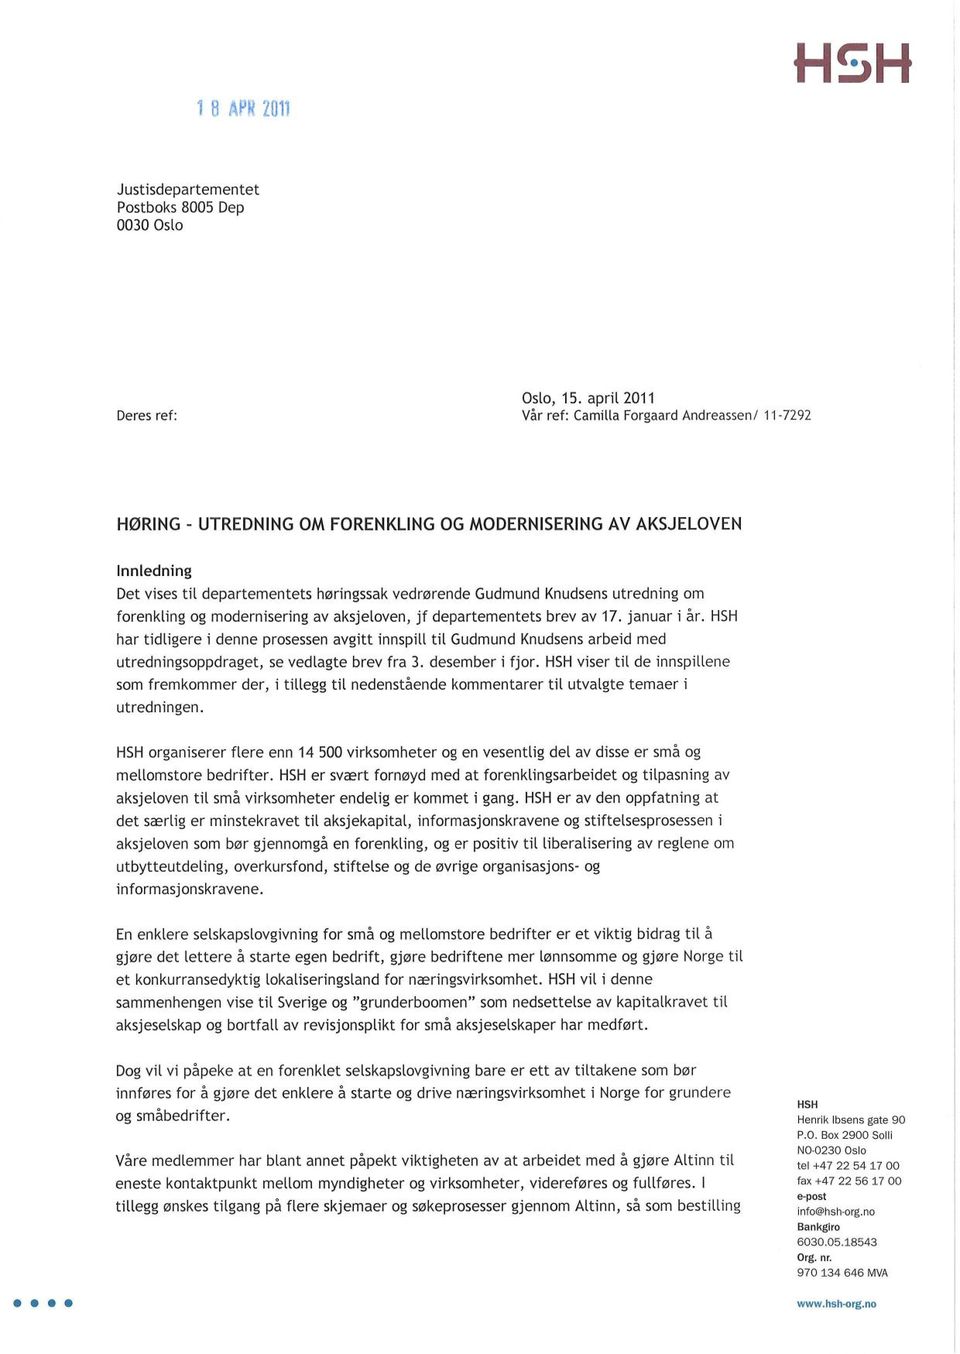 Knudsens utredning om forenkling og modernisering av aksjeloven, jf departementets brev av 17. januar i år.